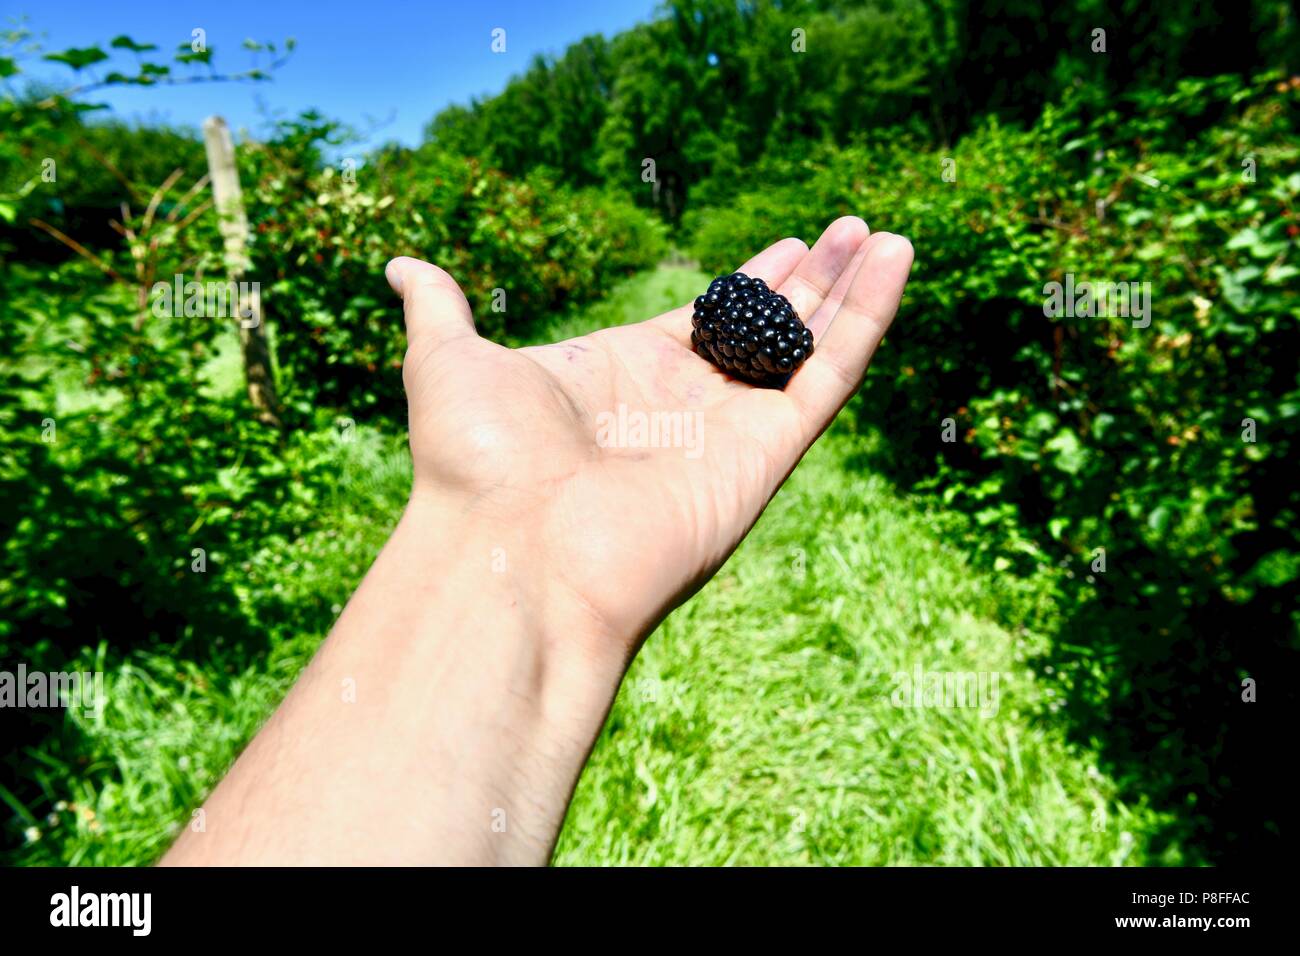 Farmer holding ripe blackberry in hand Stock Photo